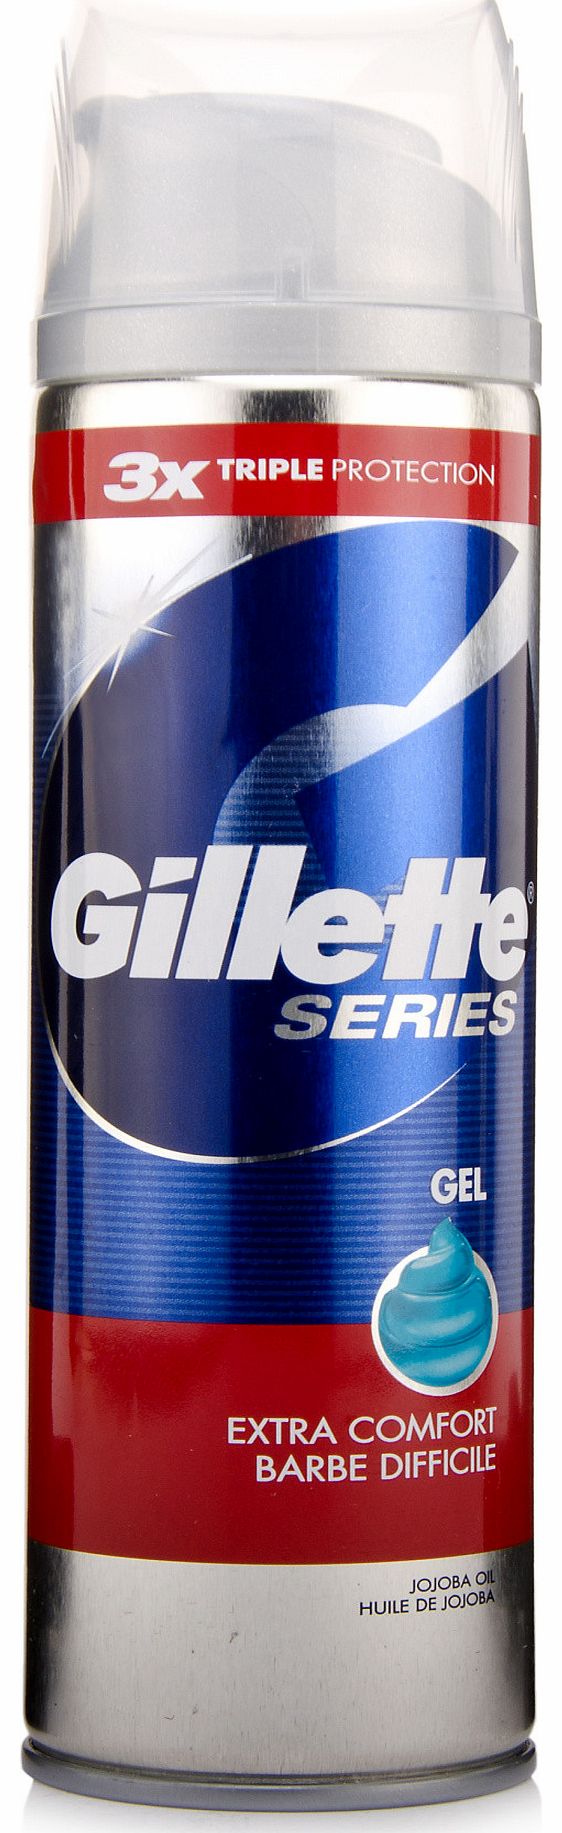 Gillette Series Extra Comfort Shave Gel